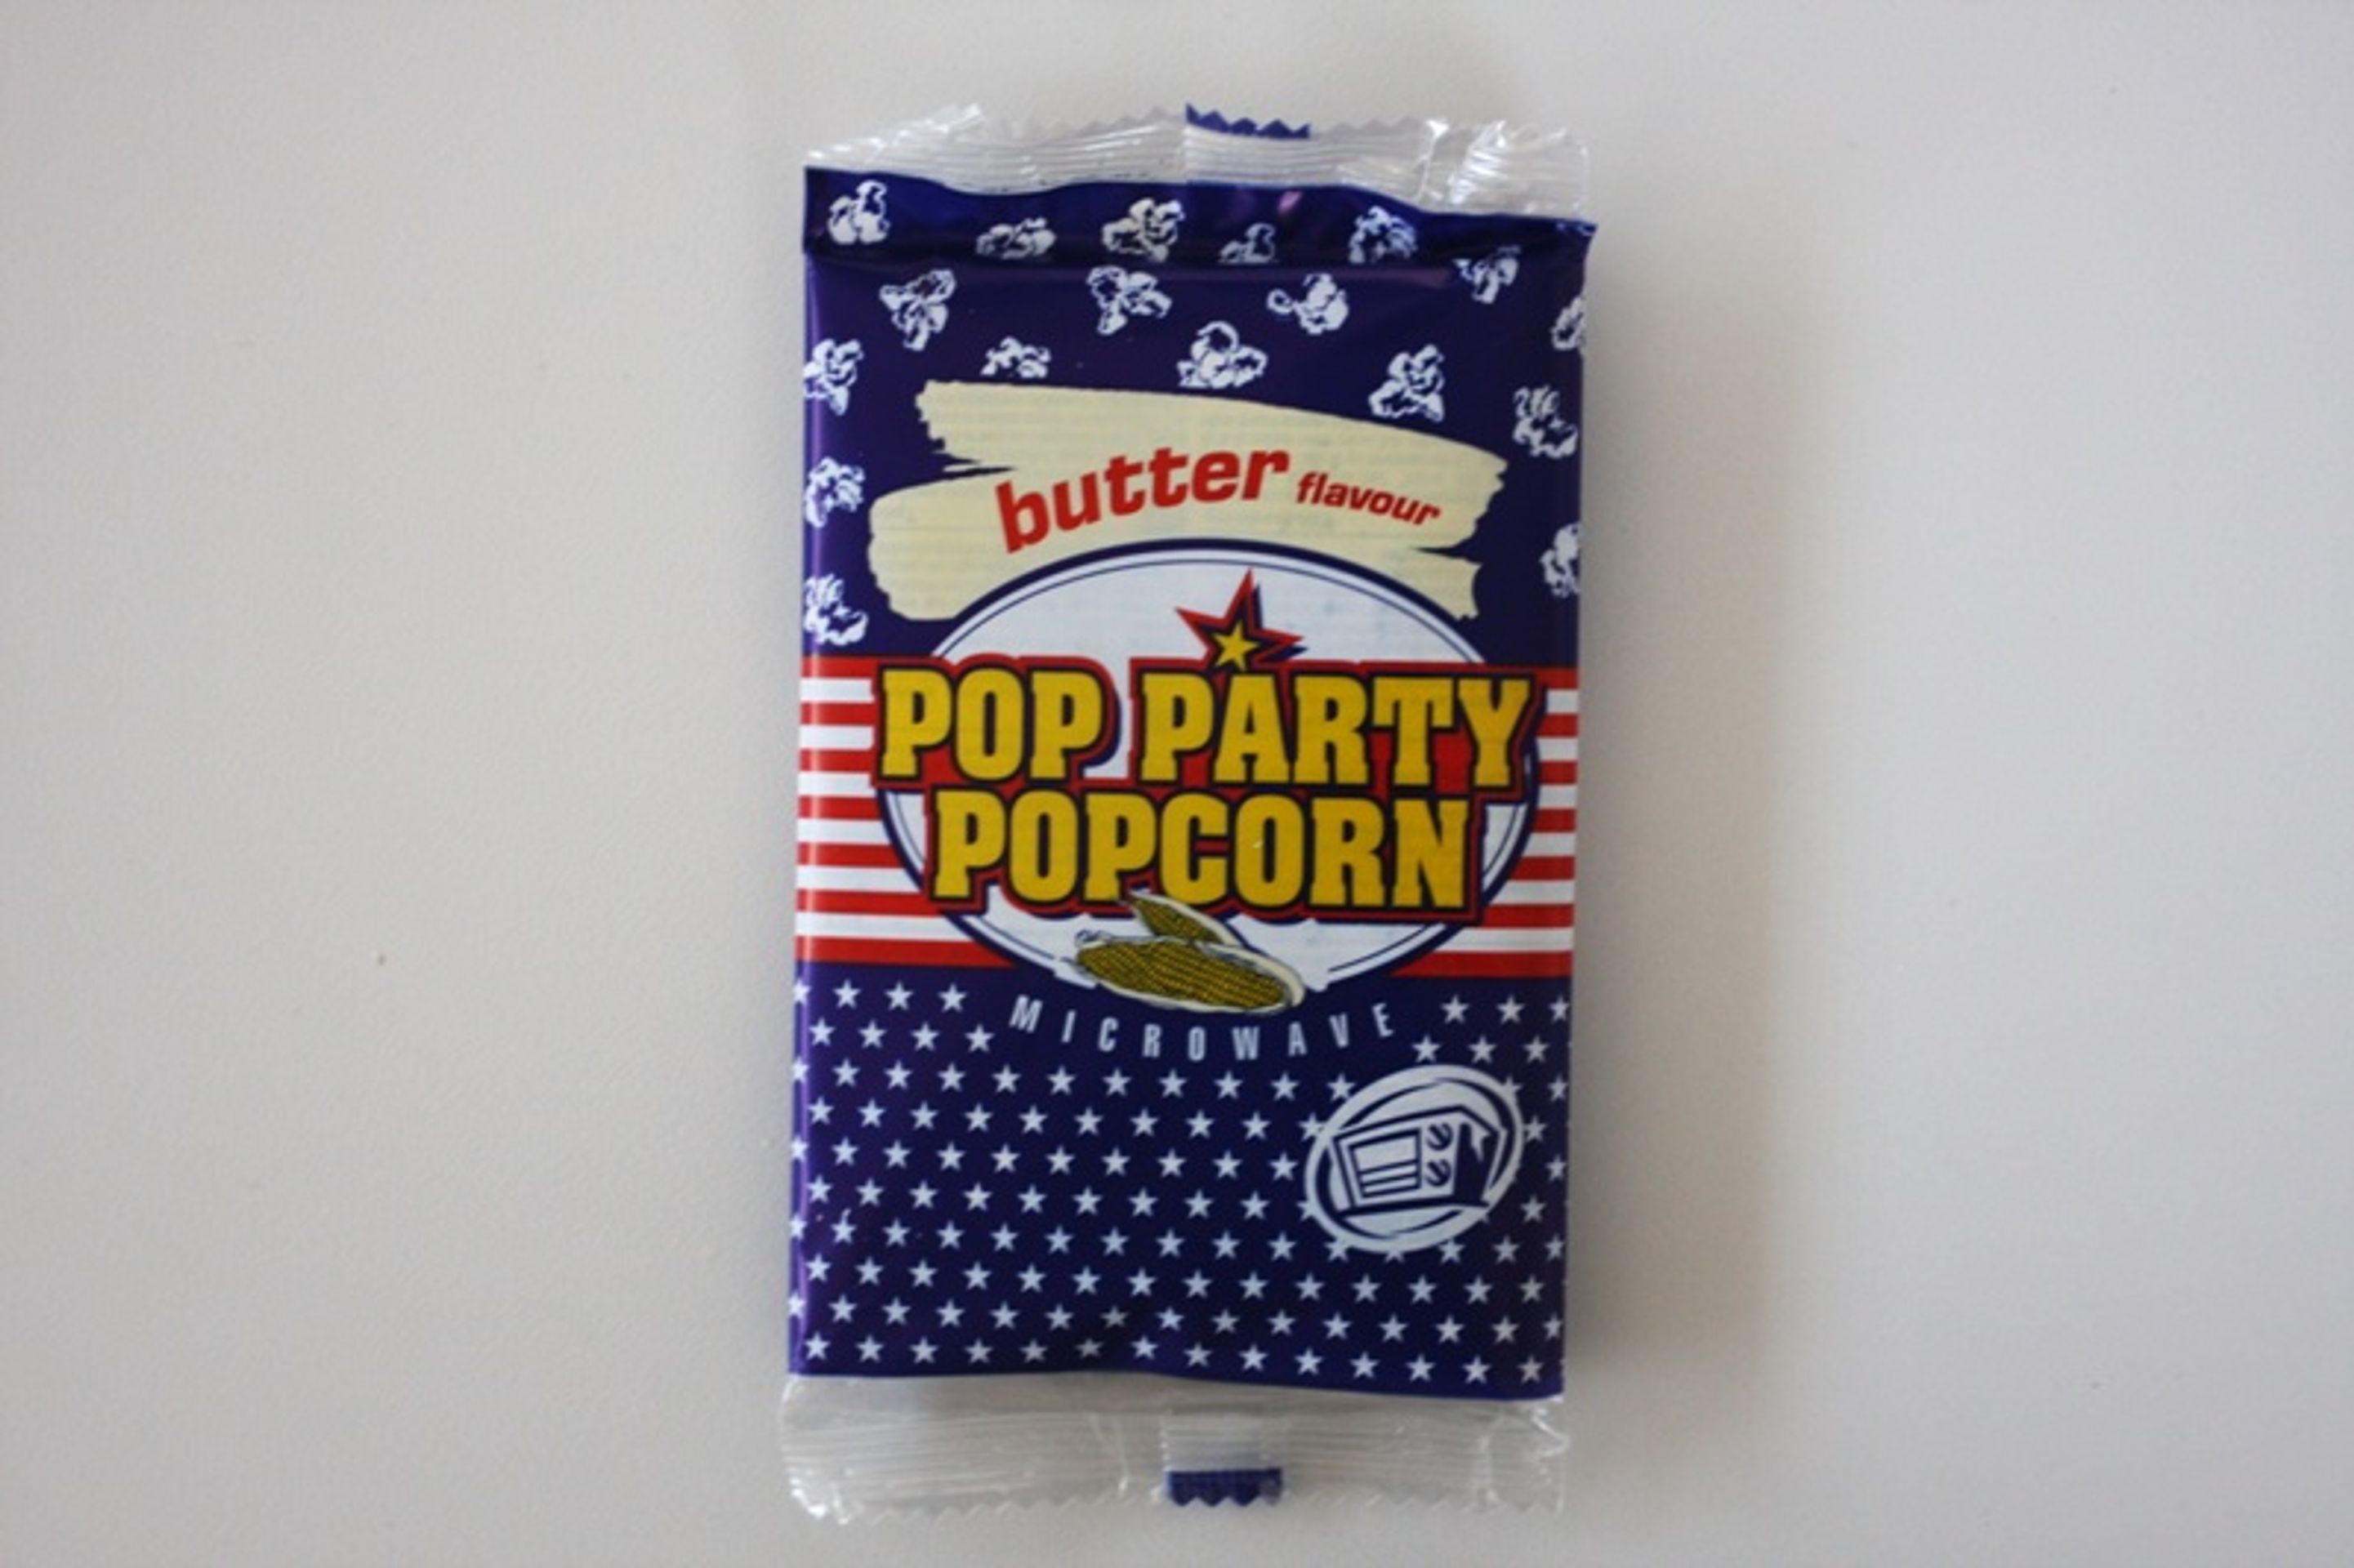 8. místo: HOPI POPI: Pop Party Popcorn - butter falvour (Snack na bázi kukuřice k expandování v mikrovlnné troubě - s máslovou příchutí) - GALERIE: Test popcornů s máslovou příchutí (8/16)